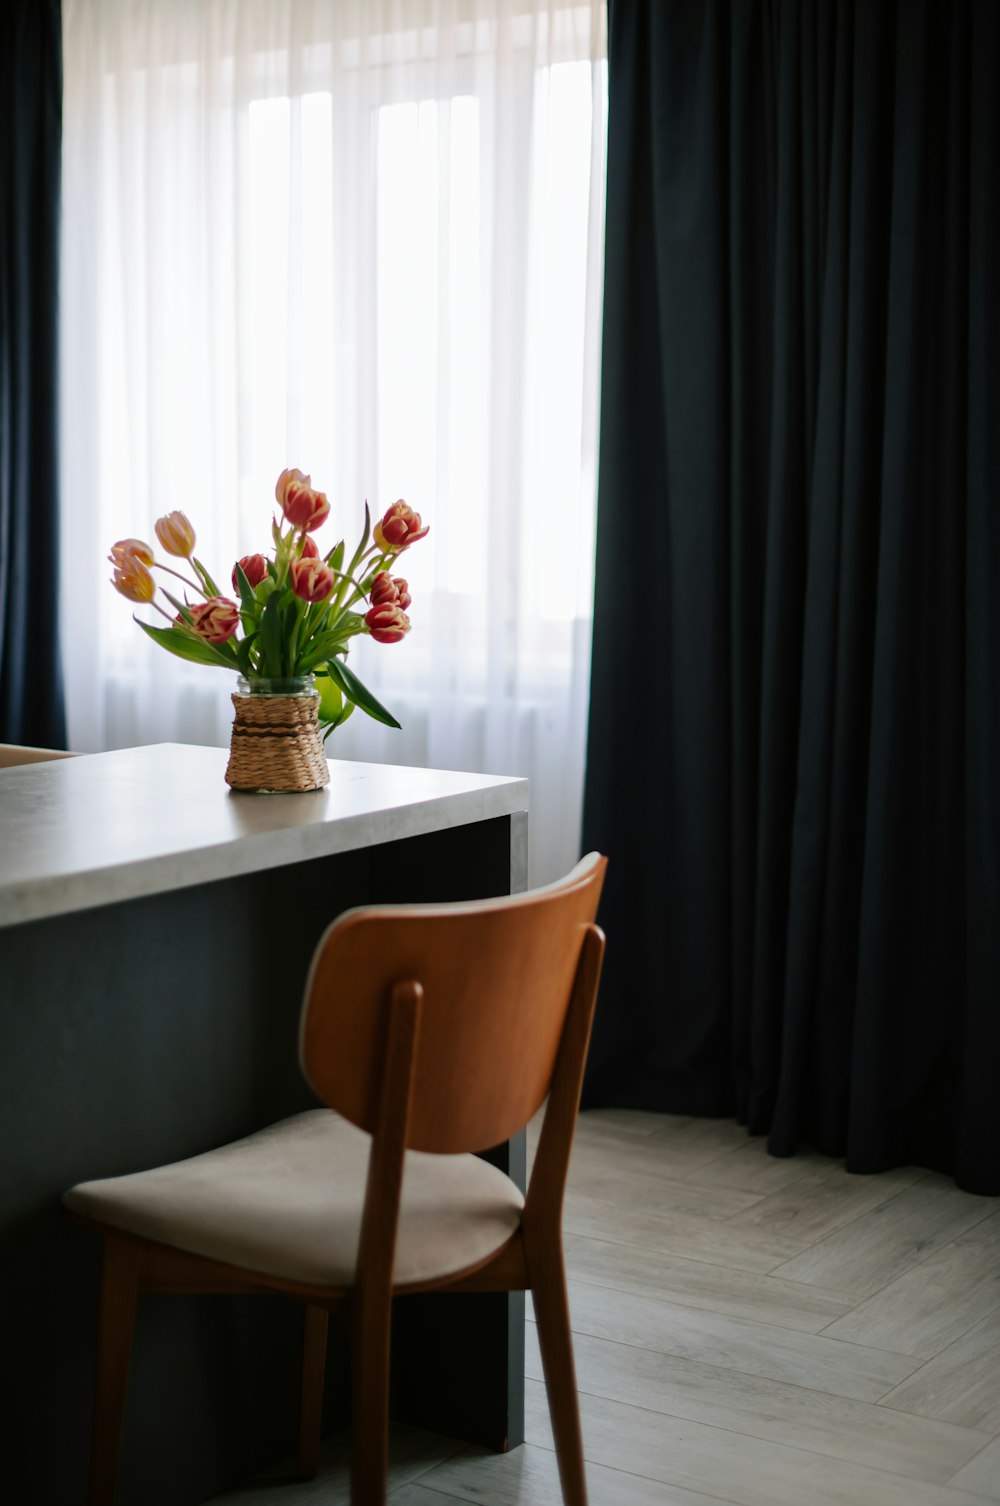 Un vase de tulipes est posé sur un comptoir à côté d’une chaise